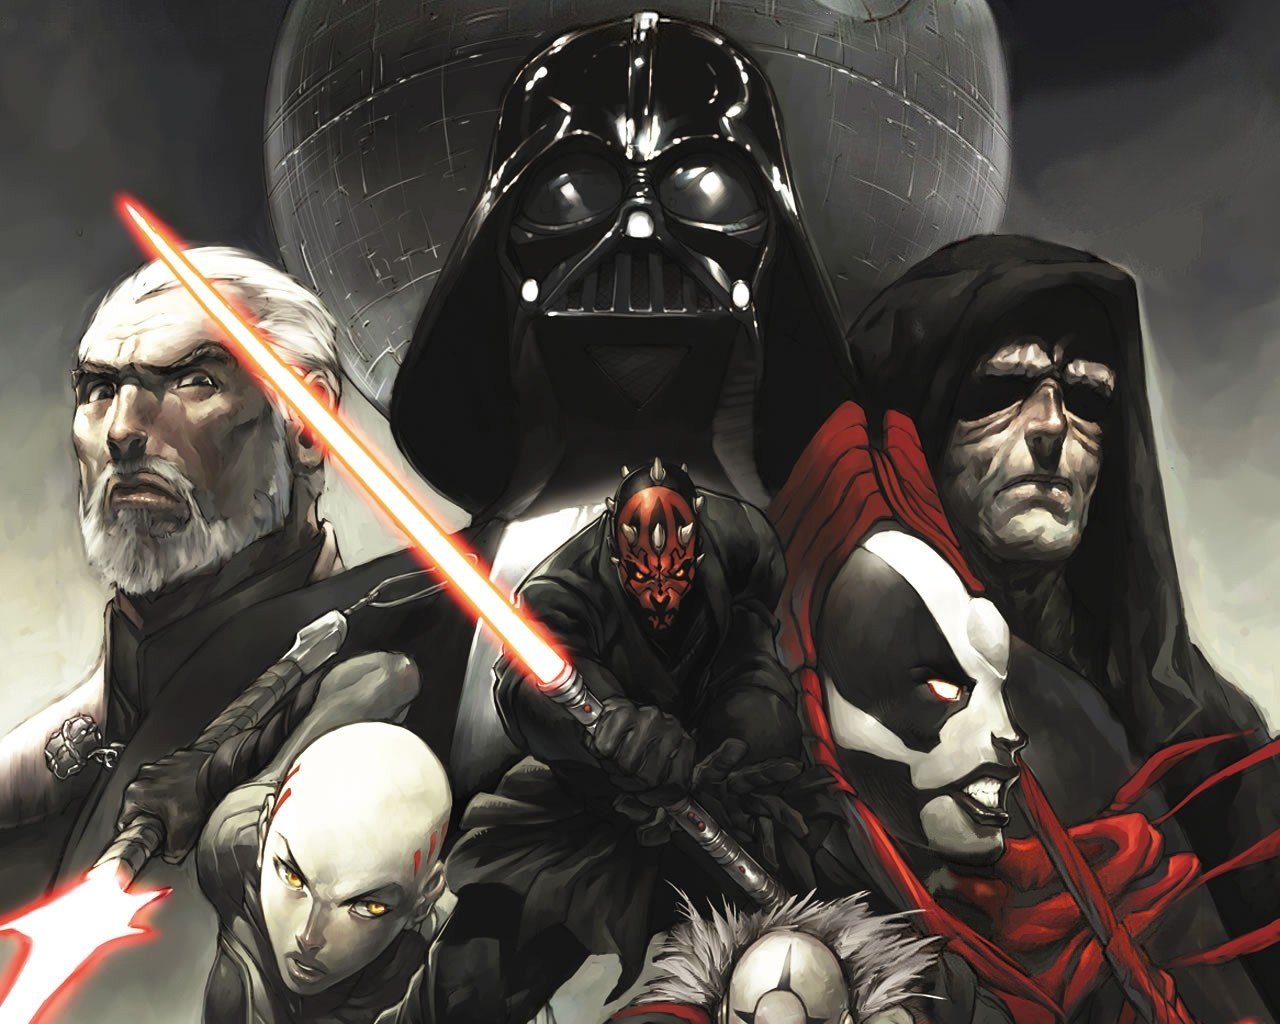 Star Wars Darth Maul Darth Vader Death Star Darth Sidious Wars Dark Side Sith Lords